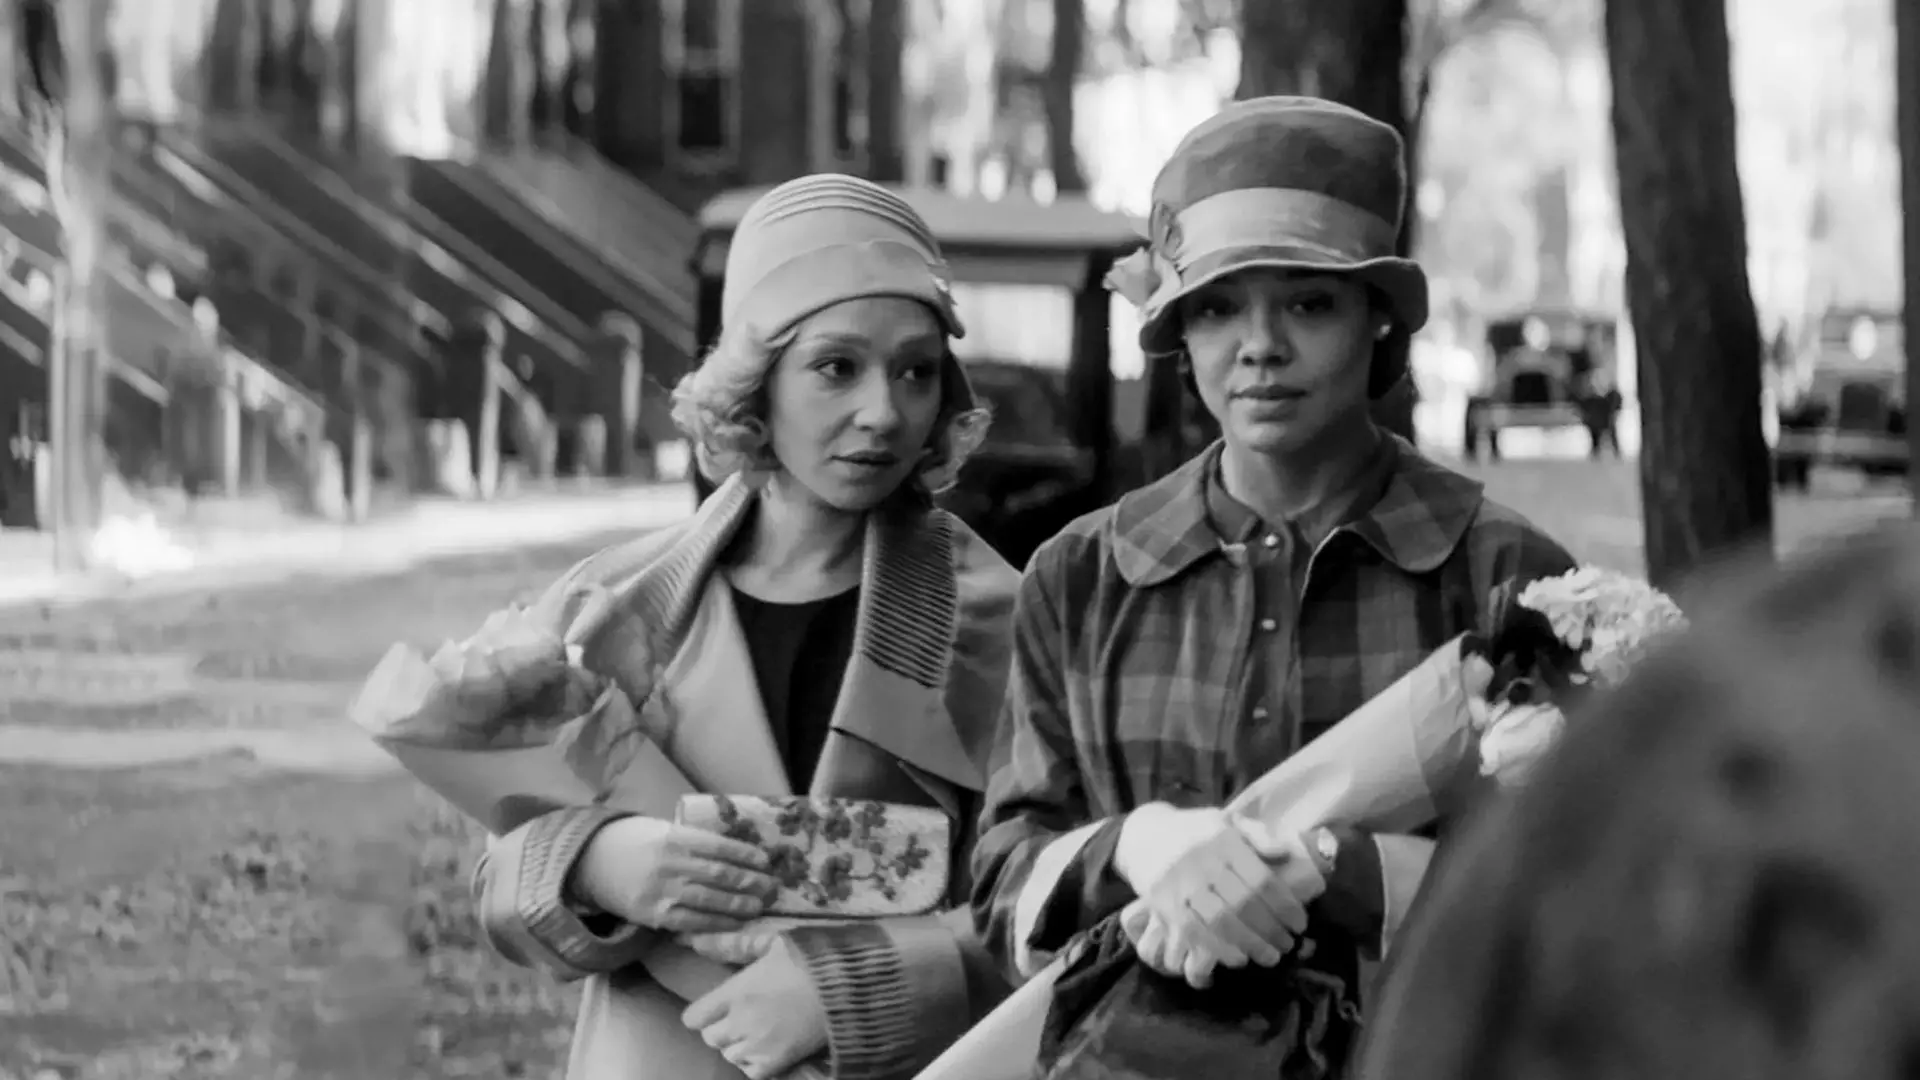 تسا تامپسون و روث نگا در حال راه رفتن در خیابان در فیلم Passing